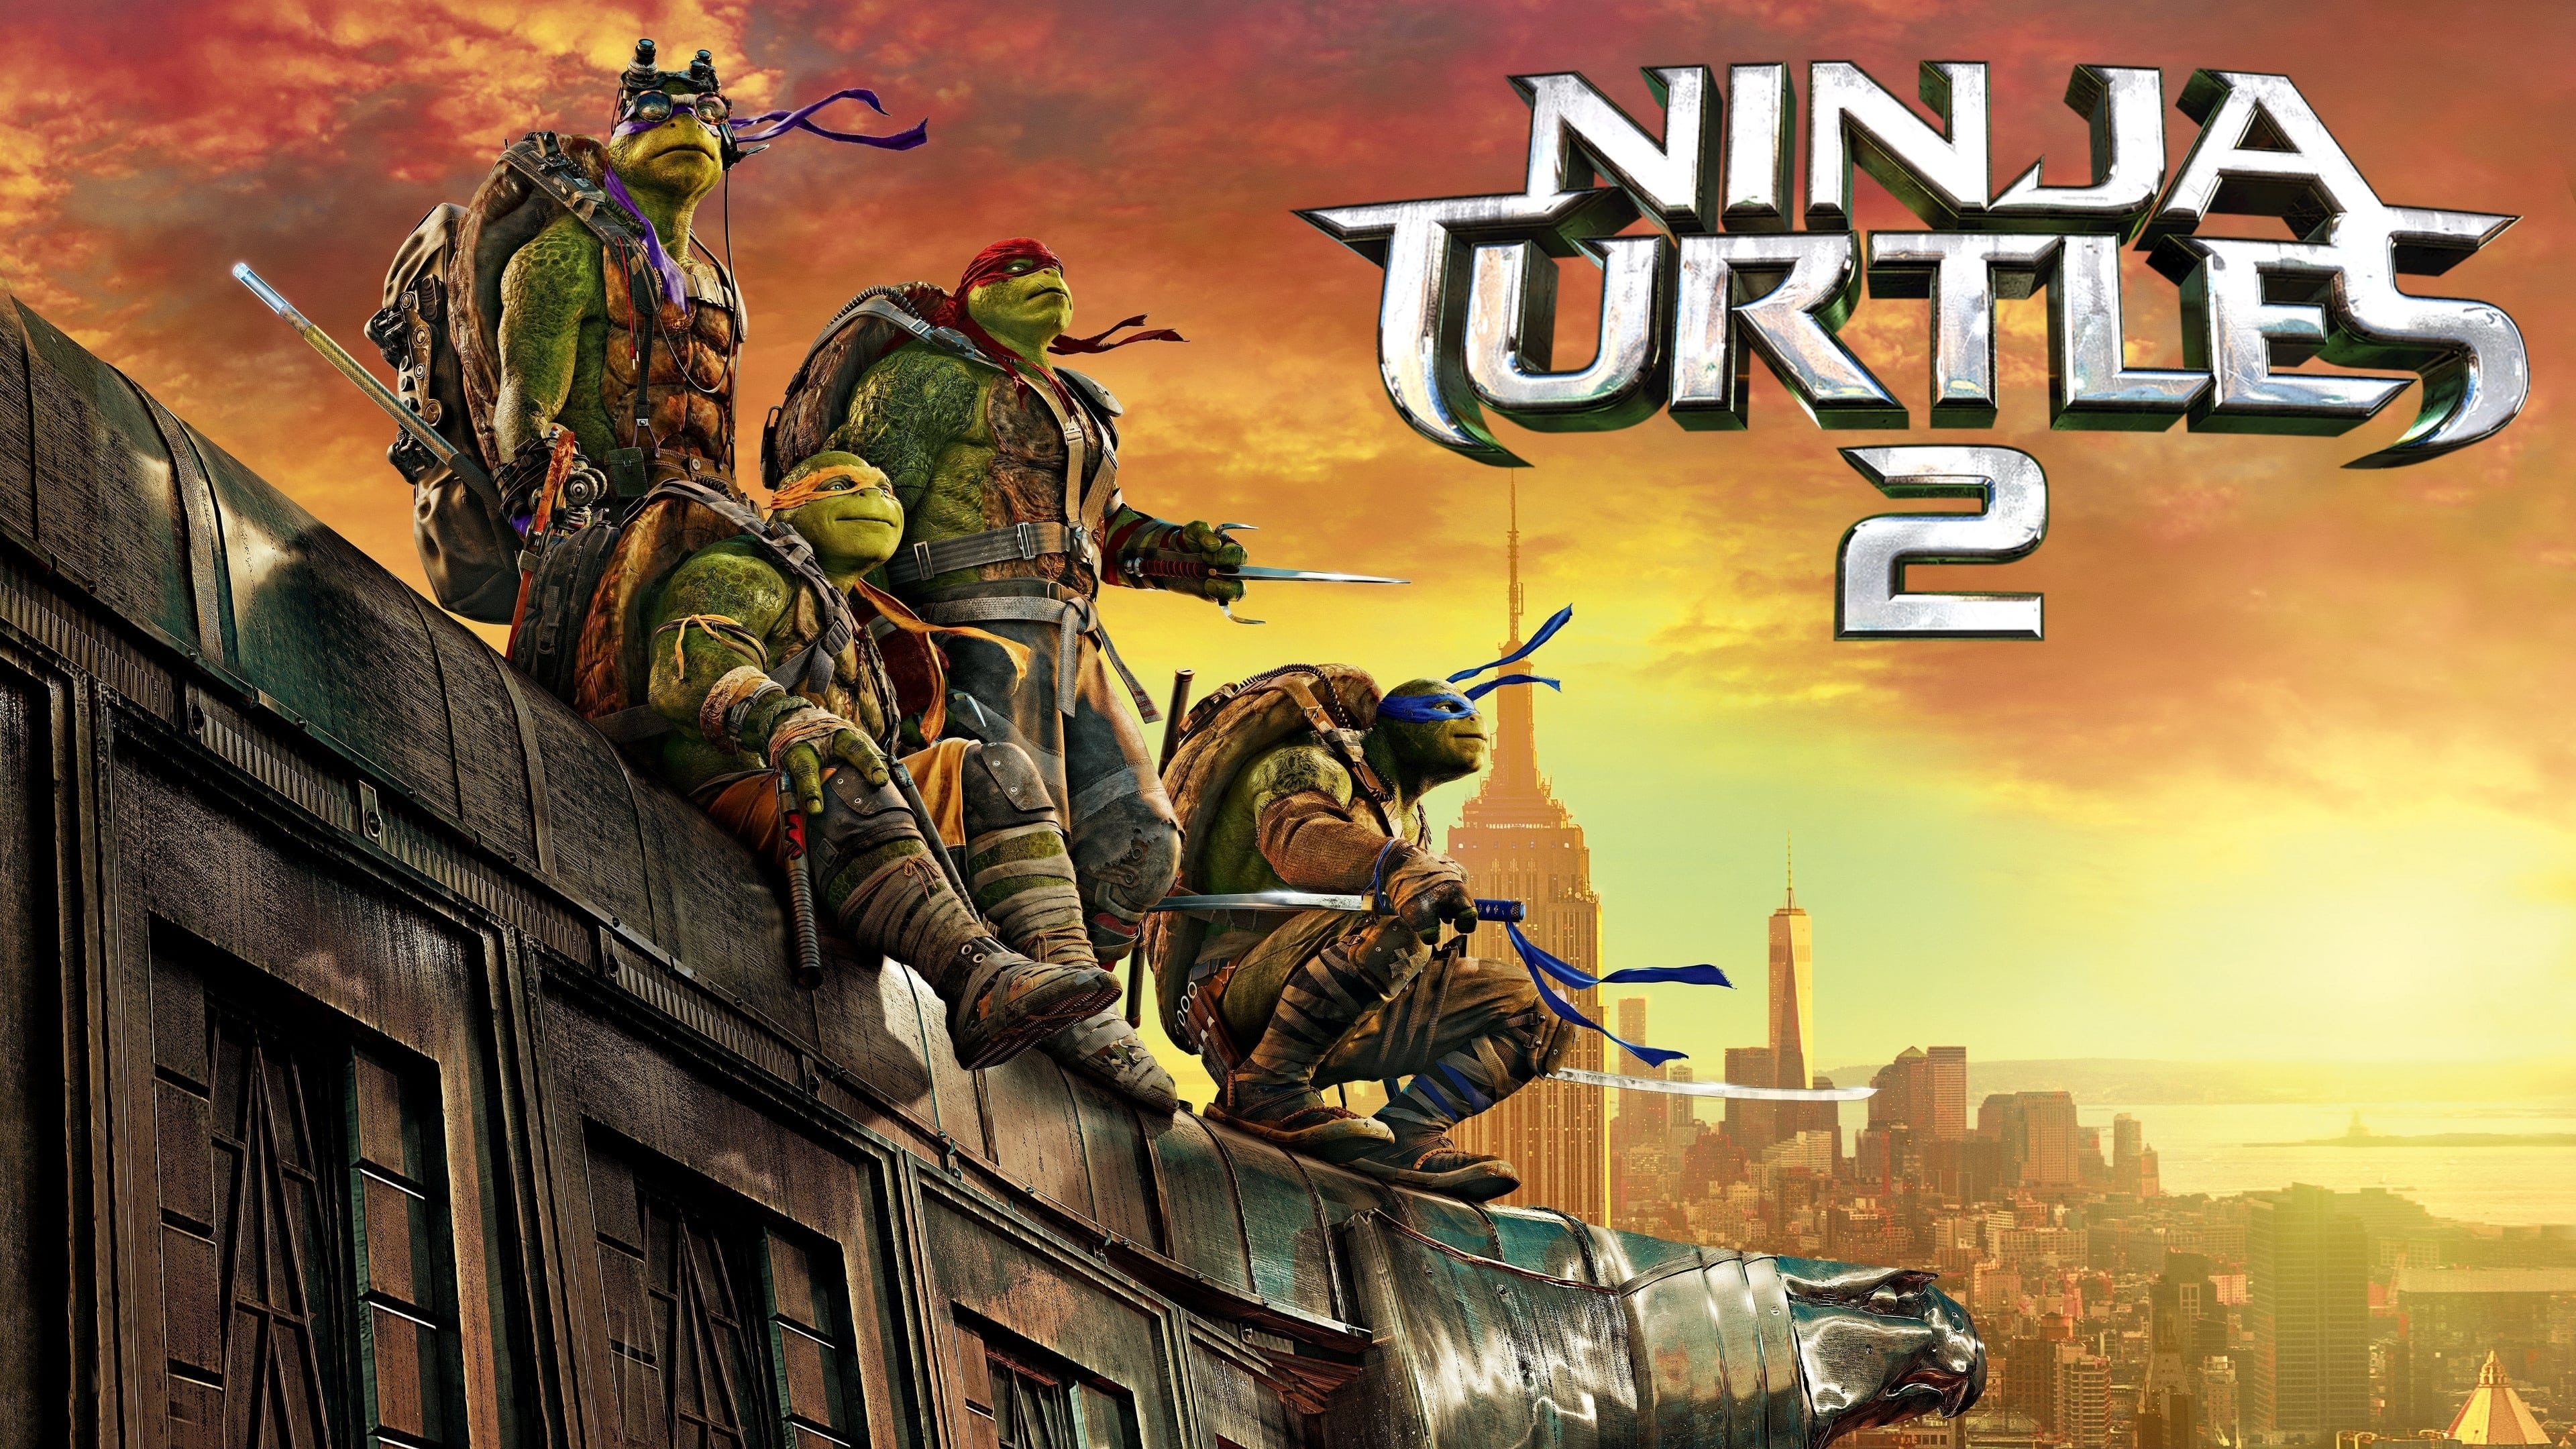 Ninja Turtles: Fuera de las sombras (2016)